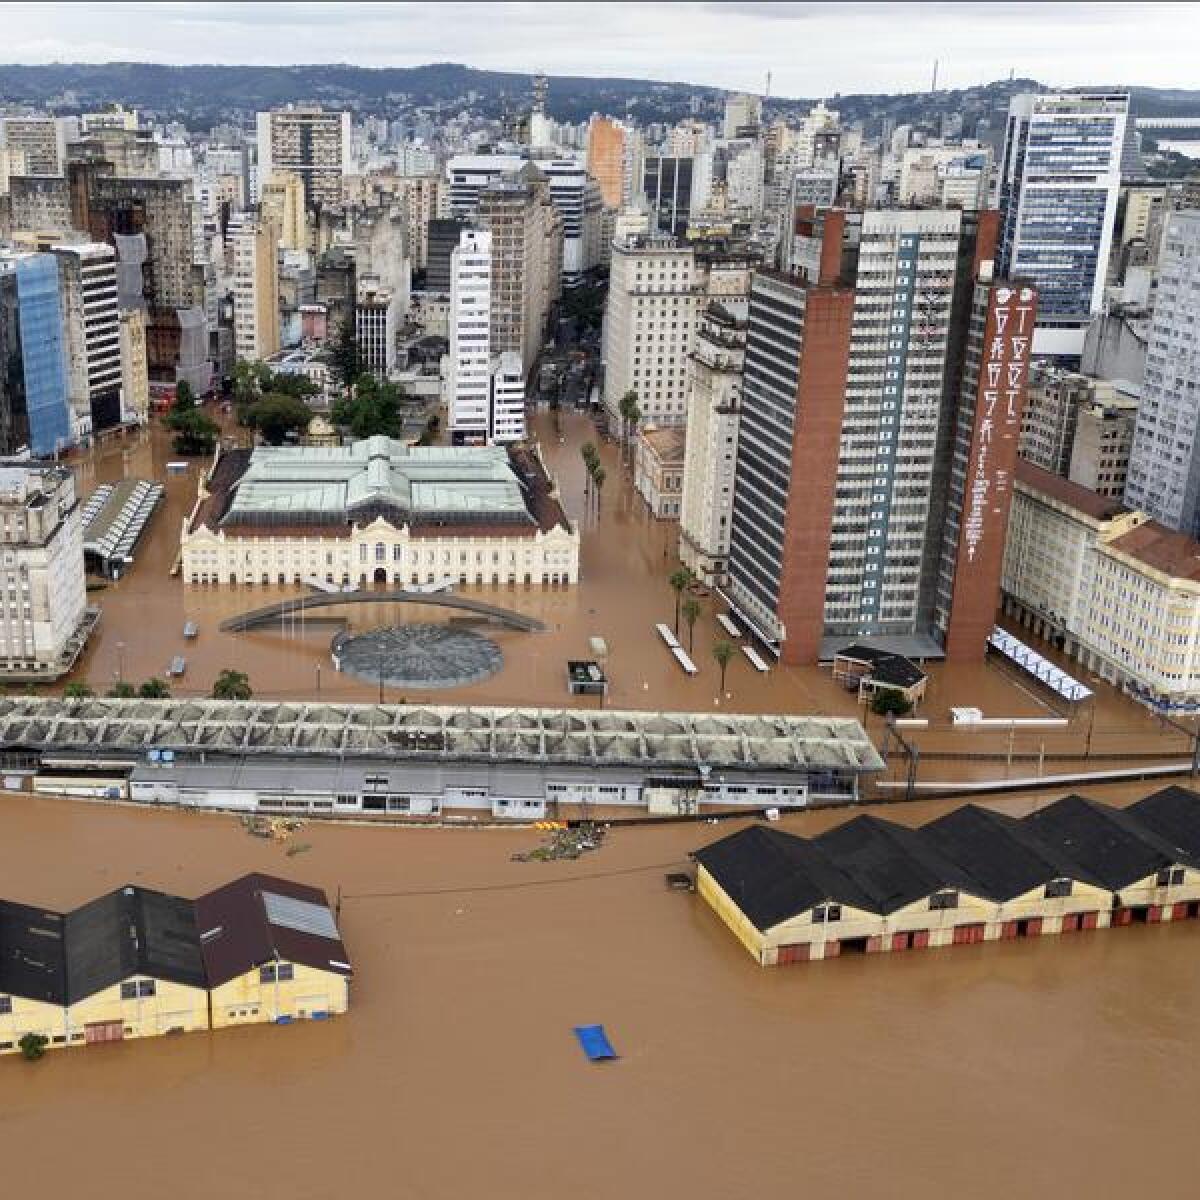 Flooding in Porto Alegre, Brazil